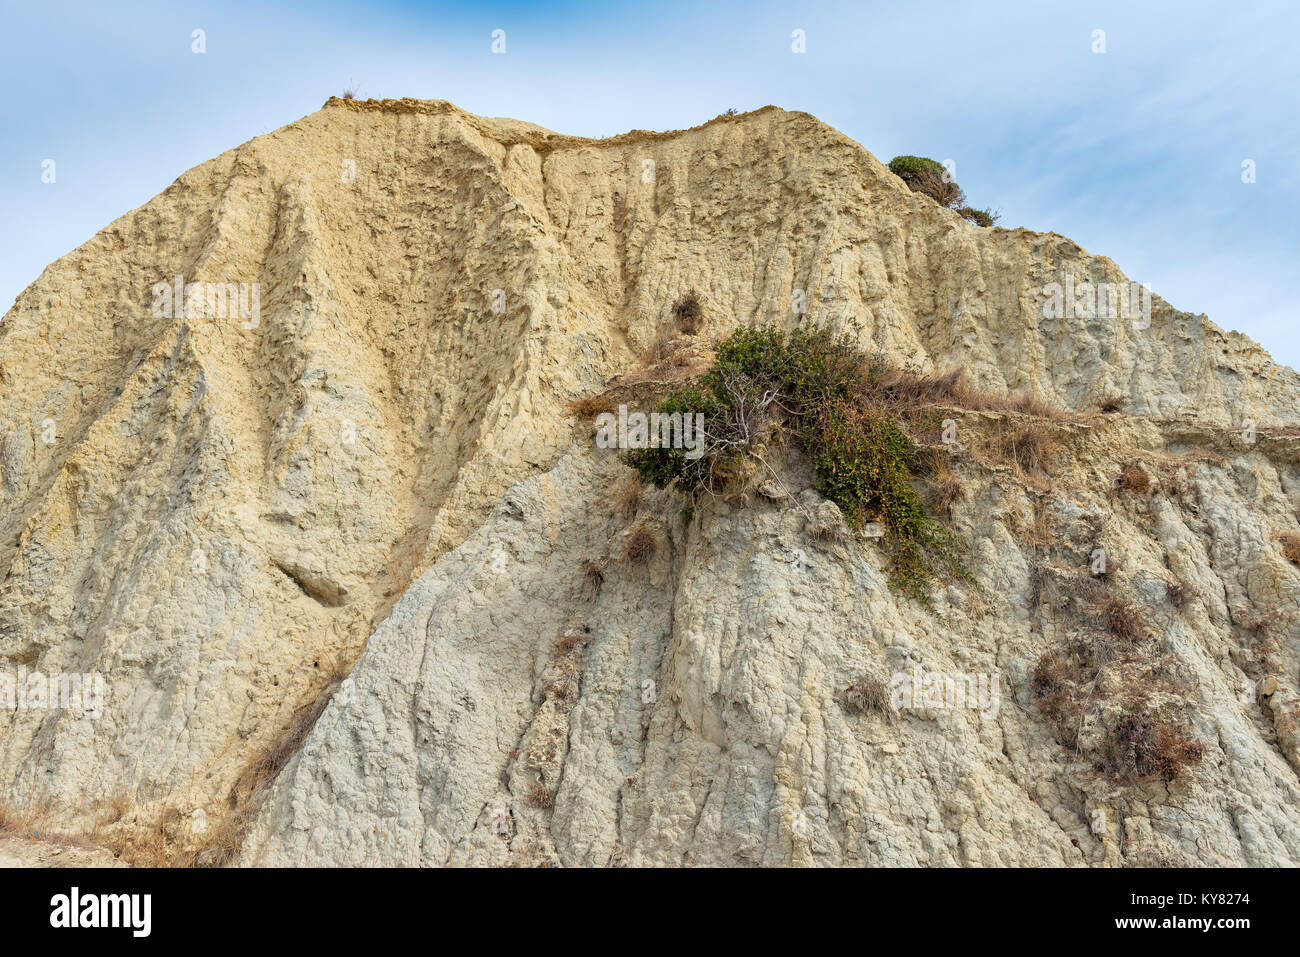 Des formations rocheuses étonnantes sur la plage de Gerakas, l'île de Zakynthos. La Grèce. Banque D'Images